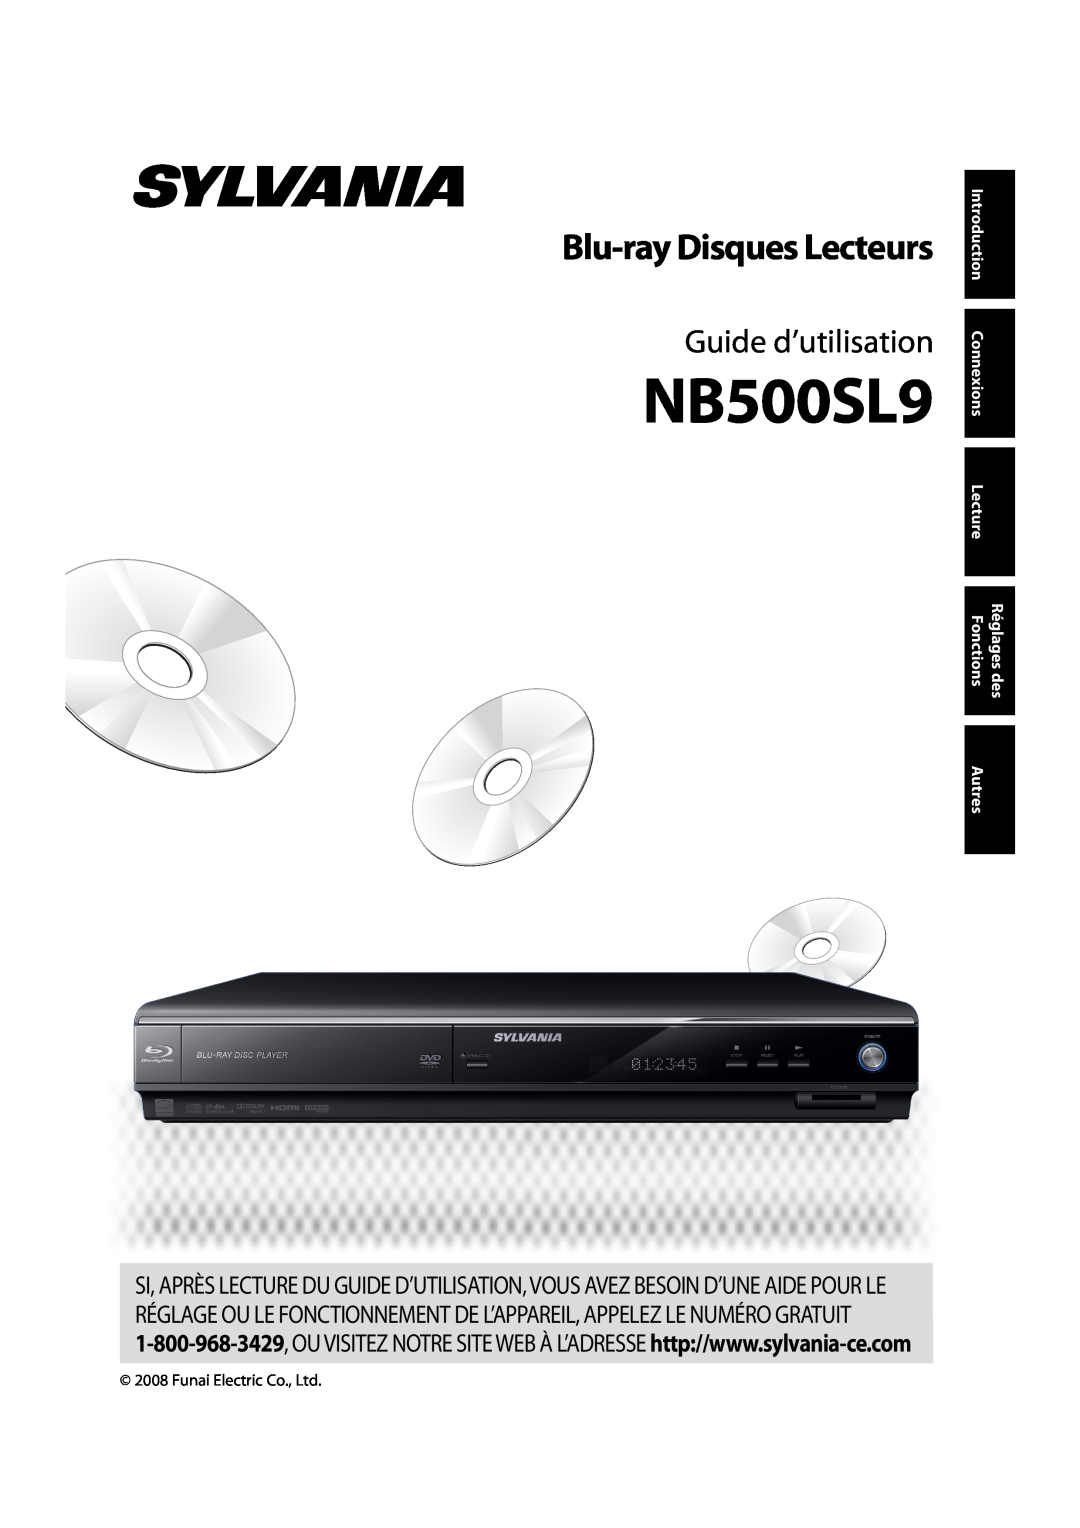 Sylvania NB500SL9 Blu-ray Disques Lecteurs, Guide d’utilisation, Fonctions, Introduction, Connexions, Lecture, Autres 